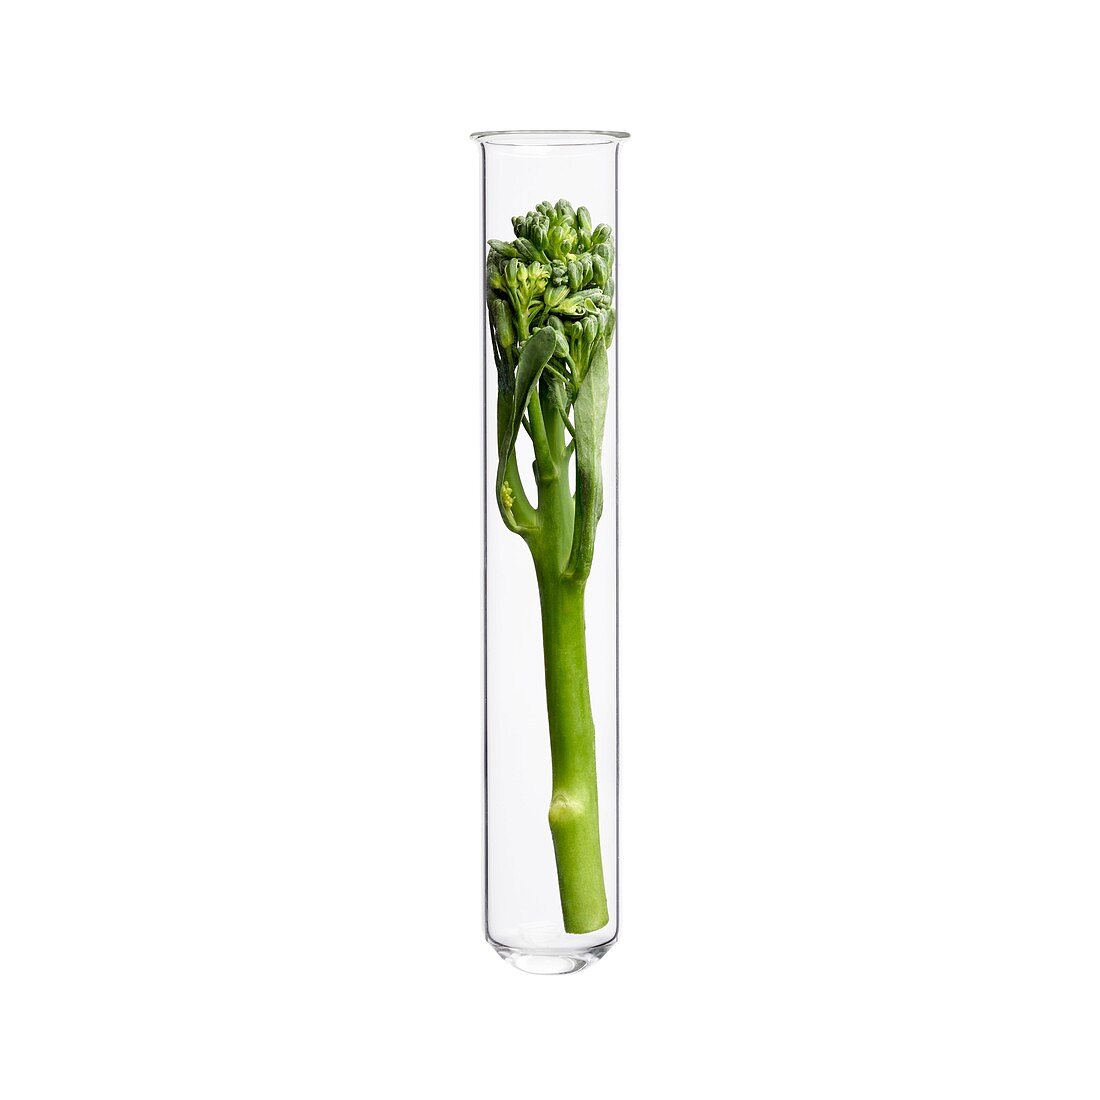 Broccoli in test tube